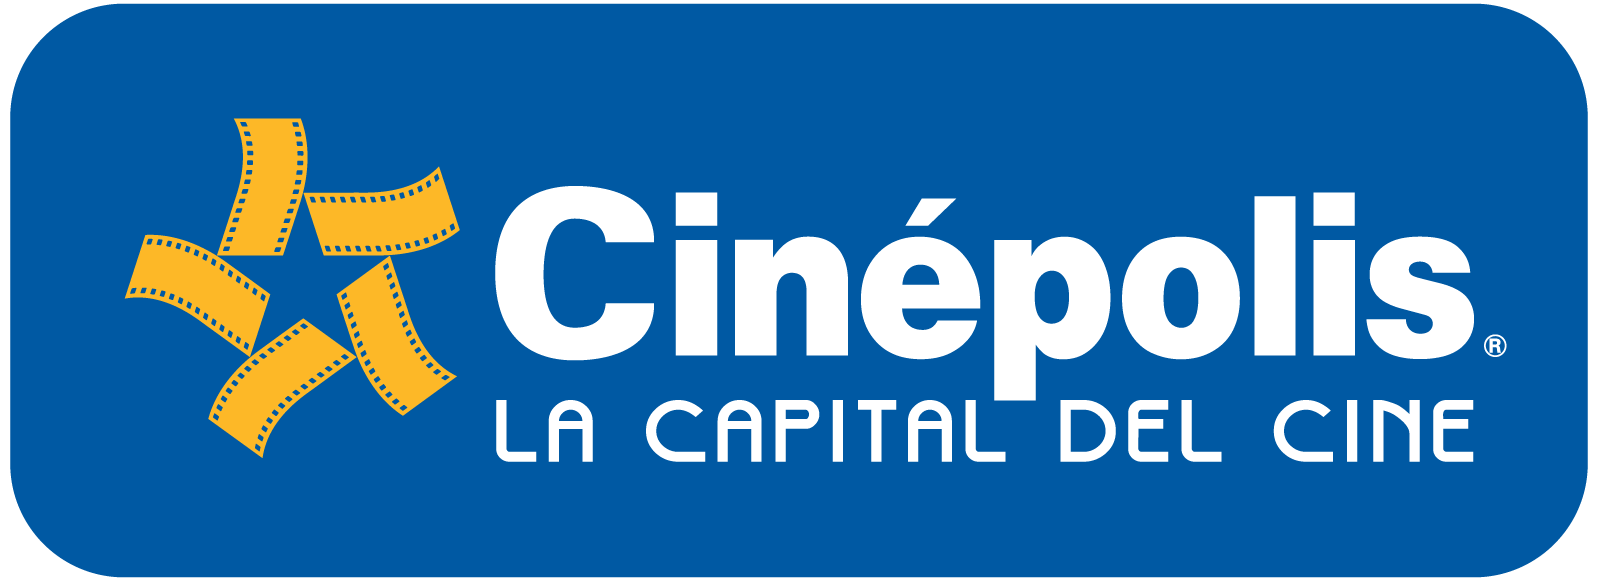 cinepolis-logo.png